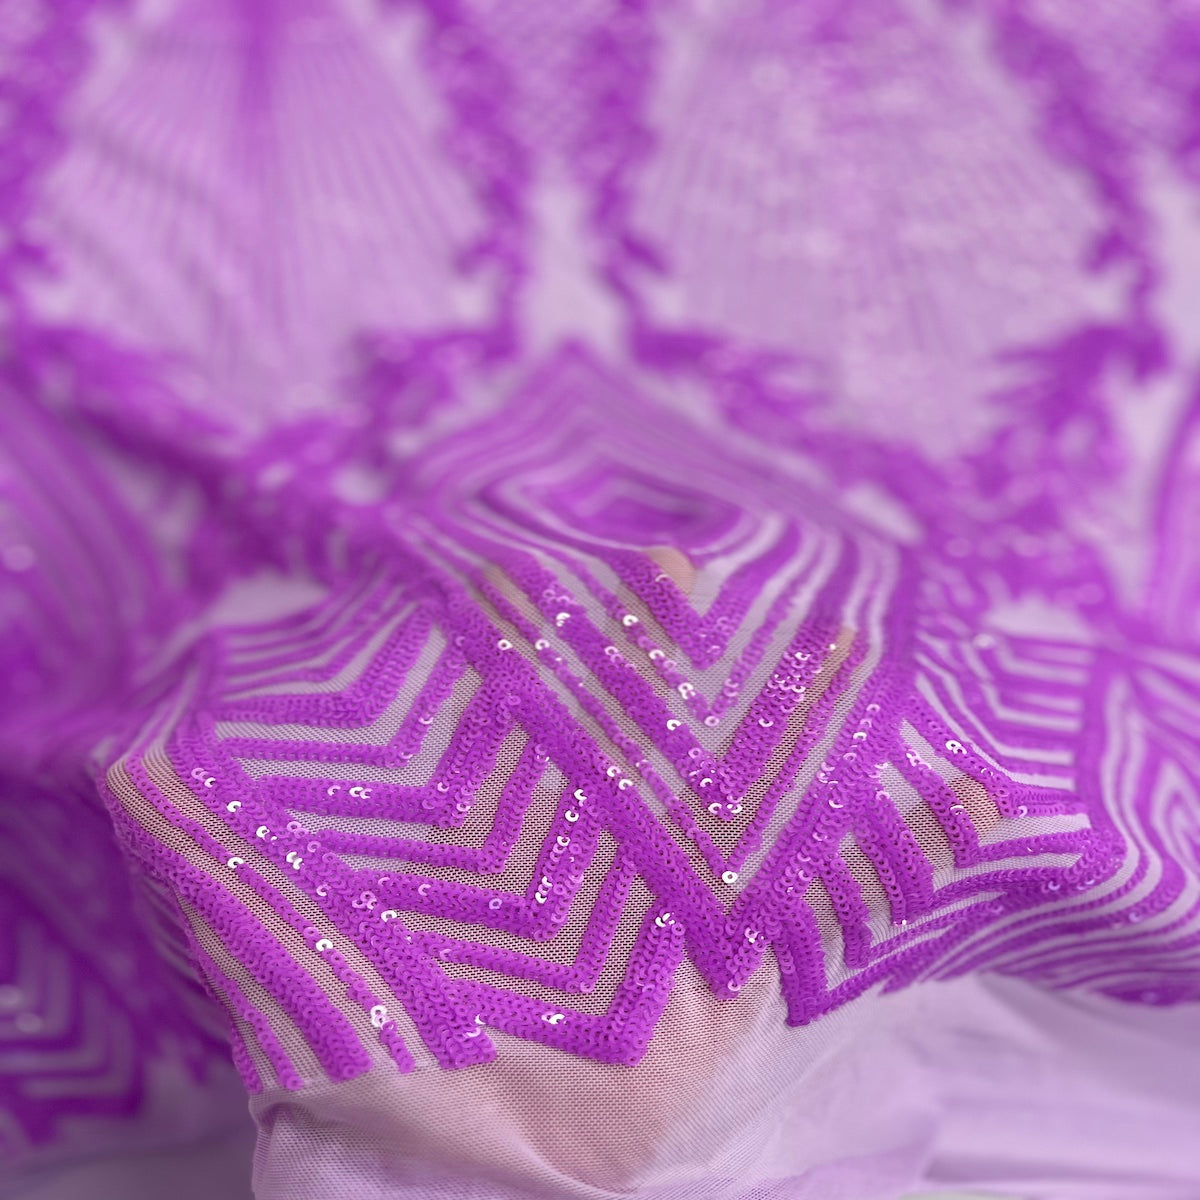 Lavender Purple Alpica Sequins Lace Fabric